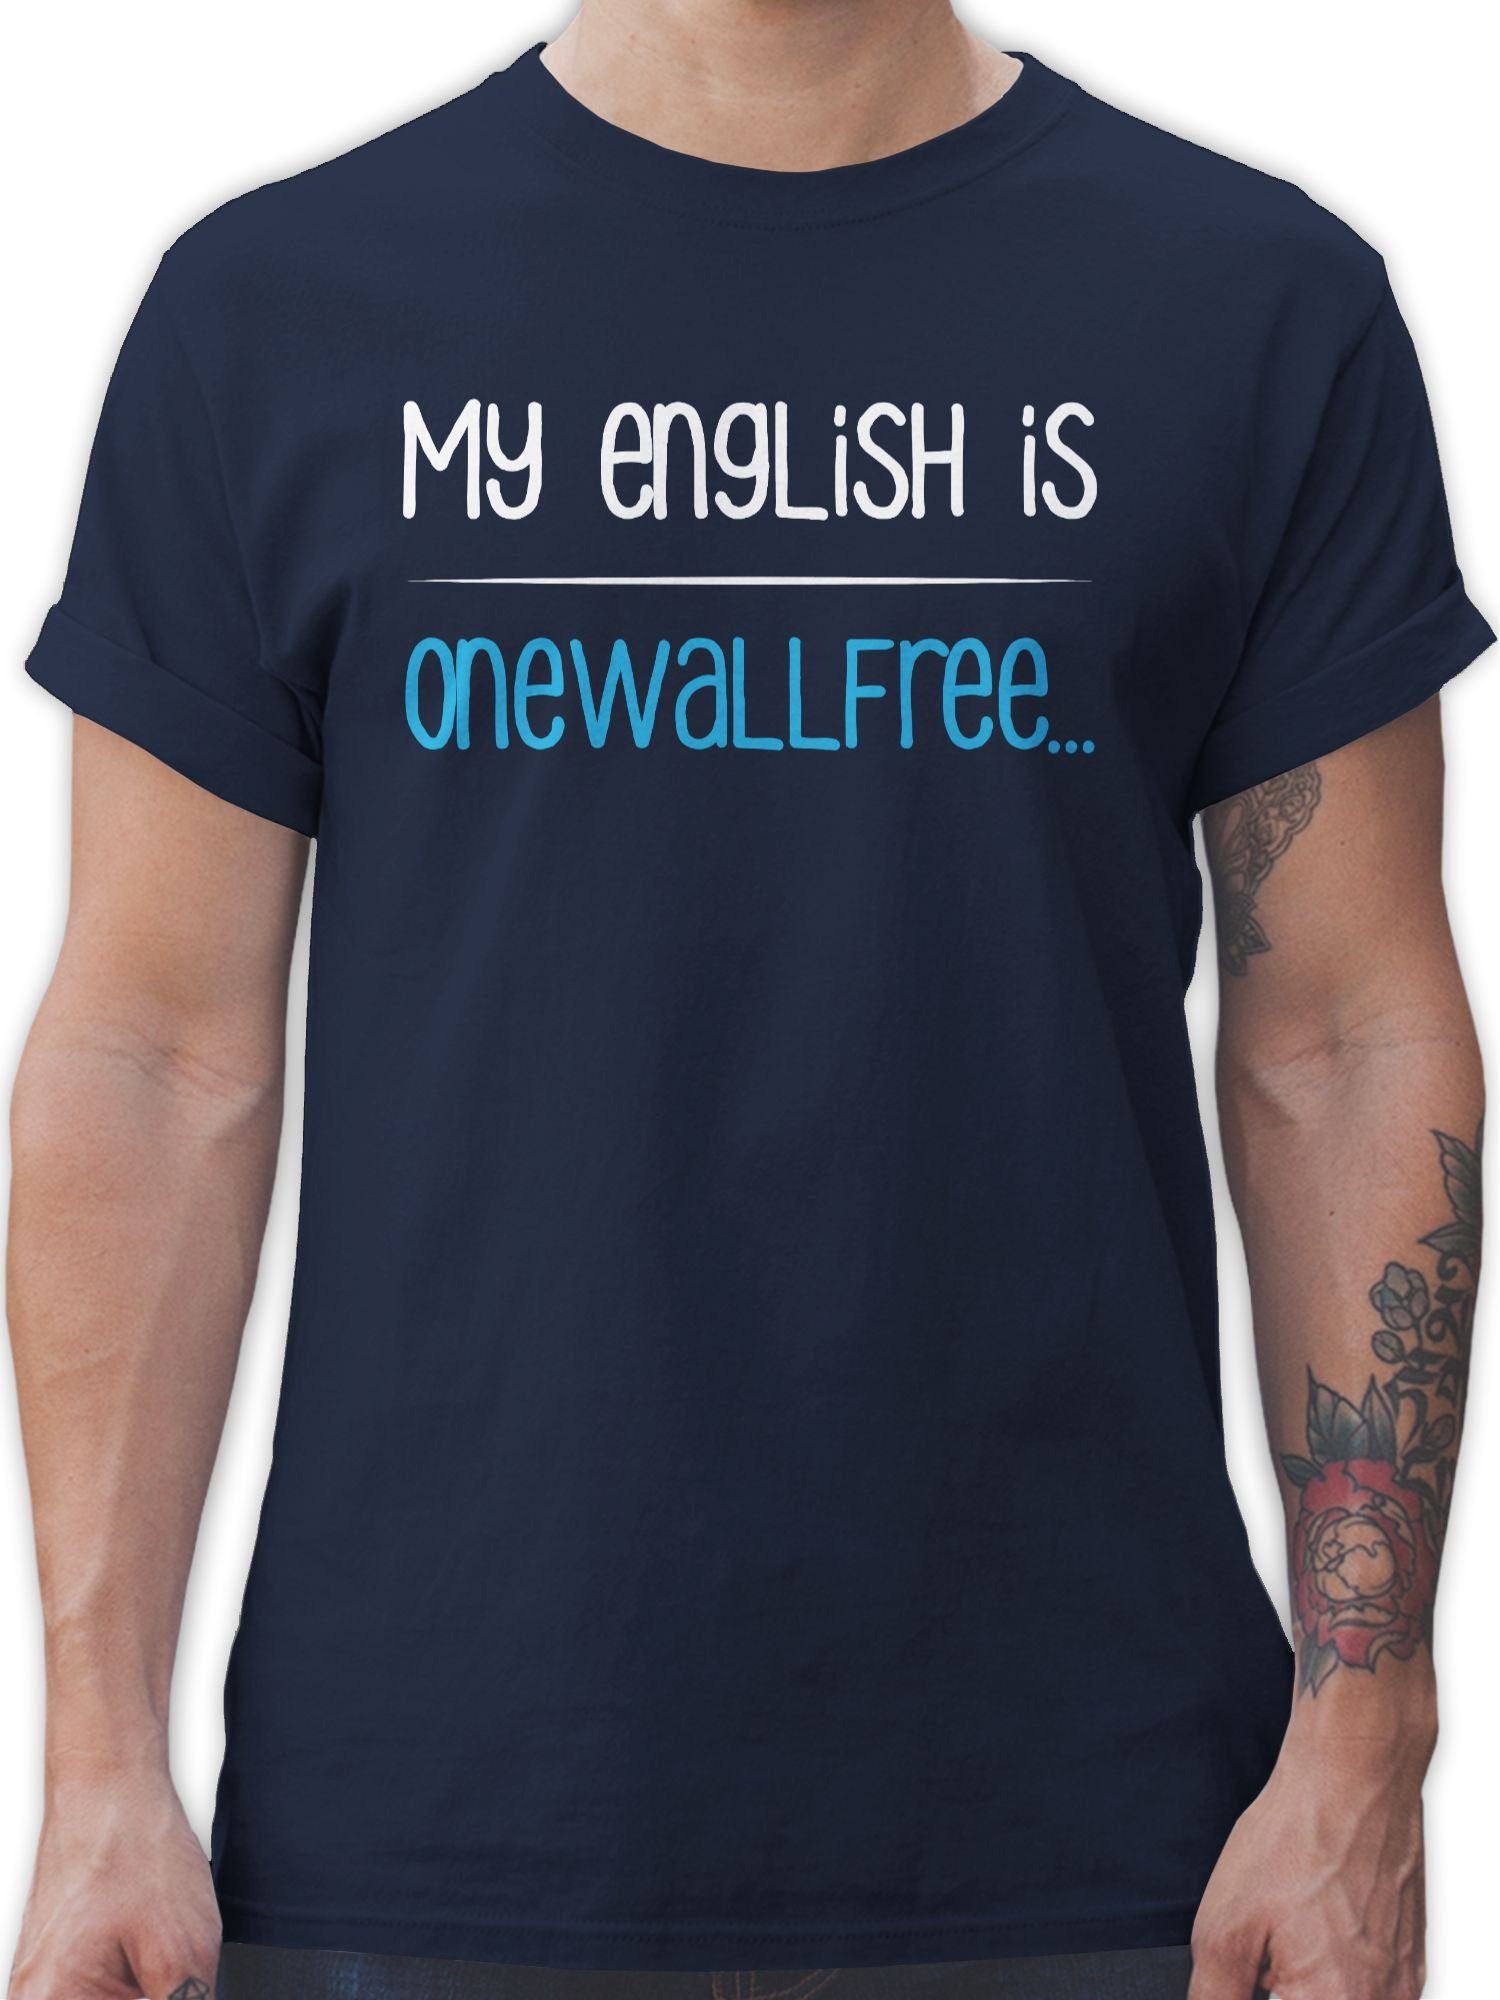 Shirtracer T-Shirt »My english is onewallfree - Denglisch - Sprüche